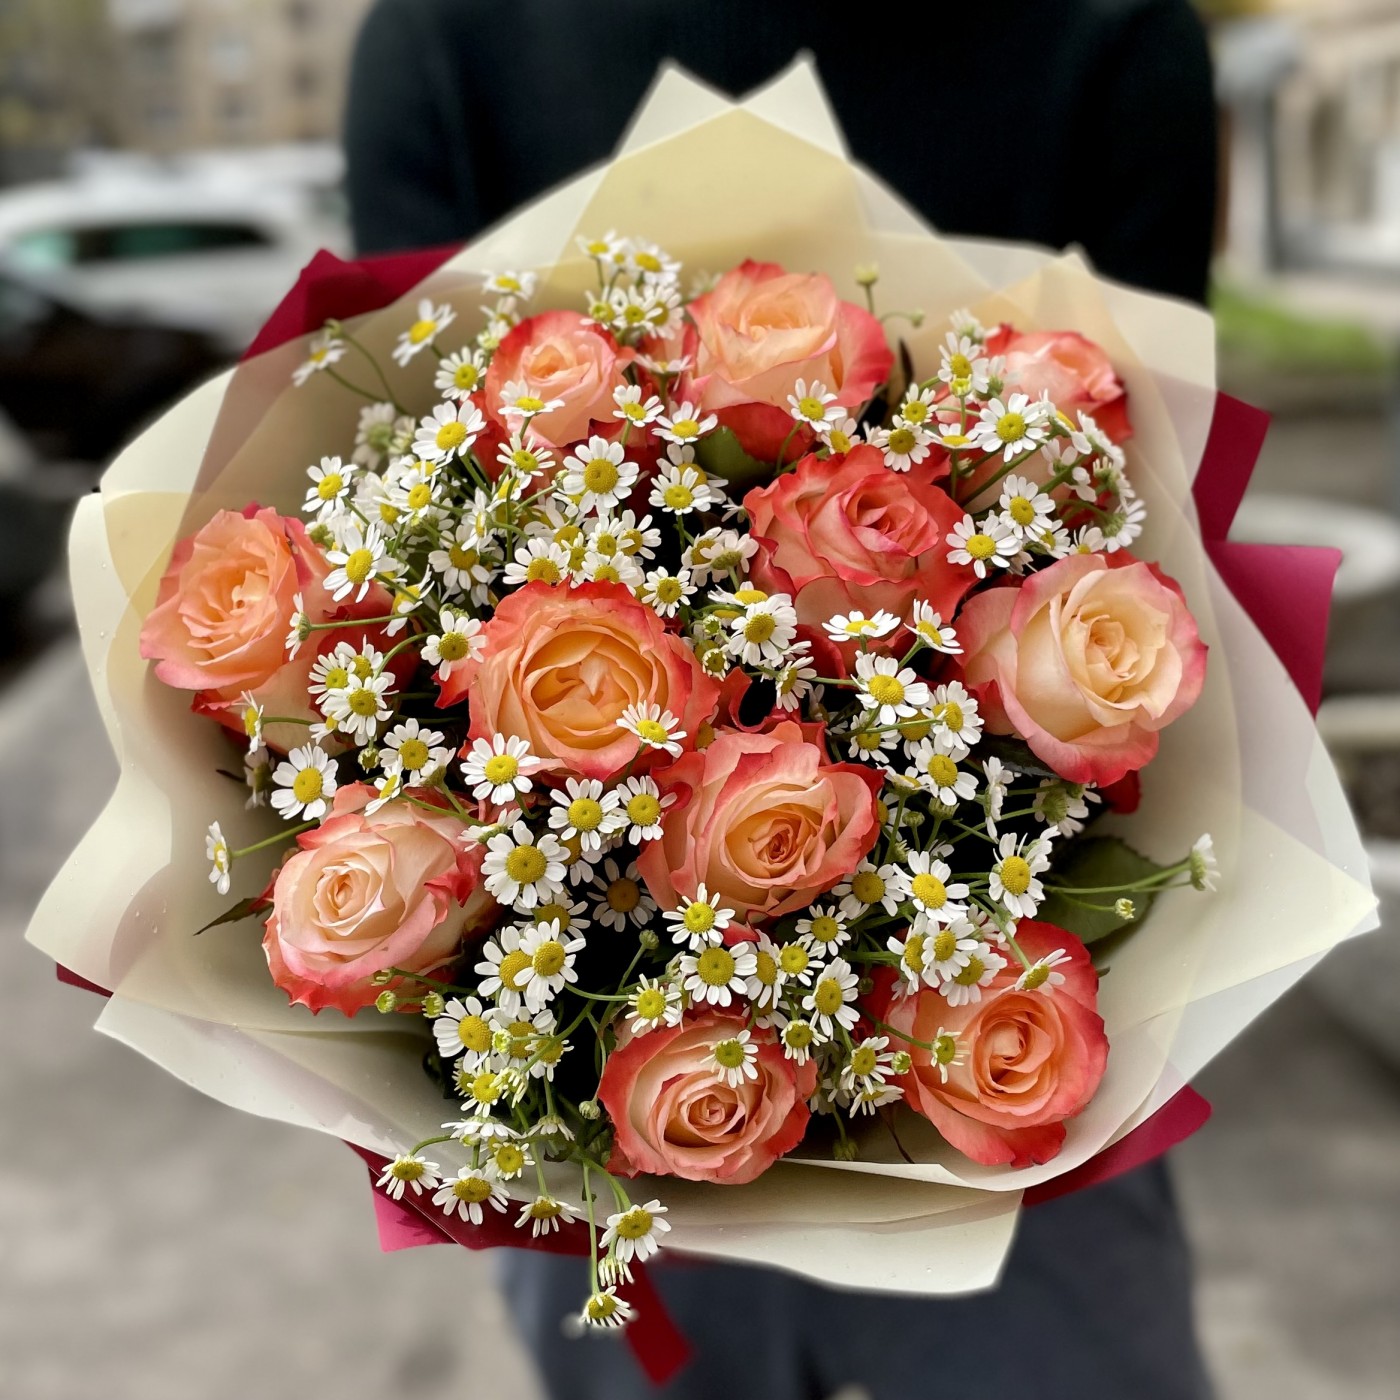 Букет оранжевых роз с ромашками по цене до 2000 рублей в подарок на День Матери